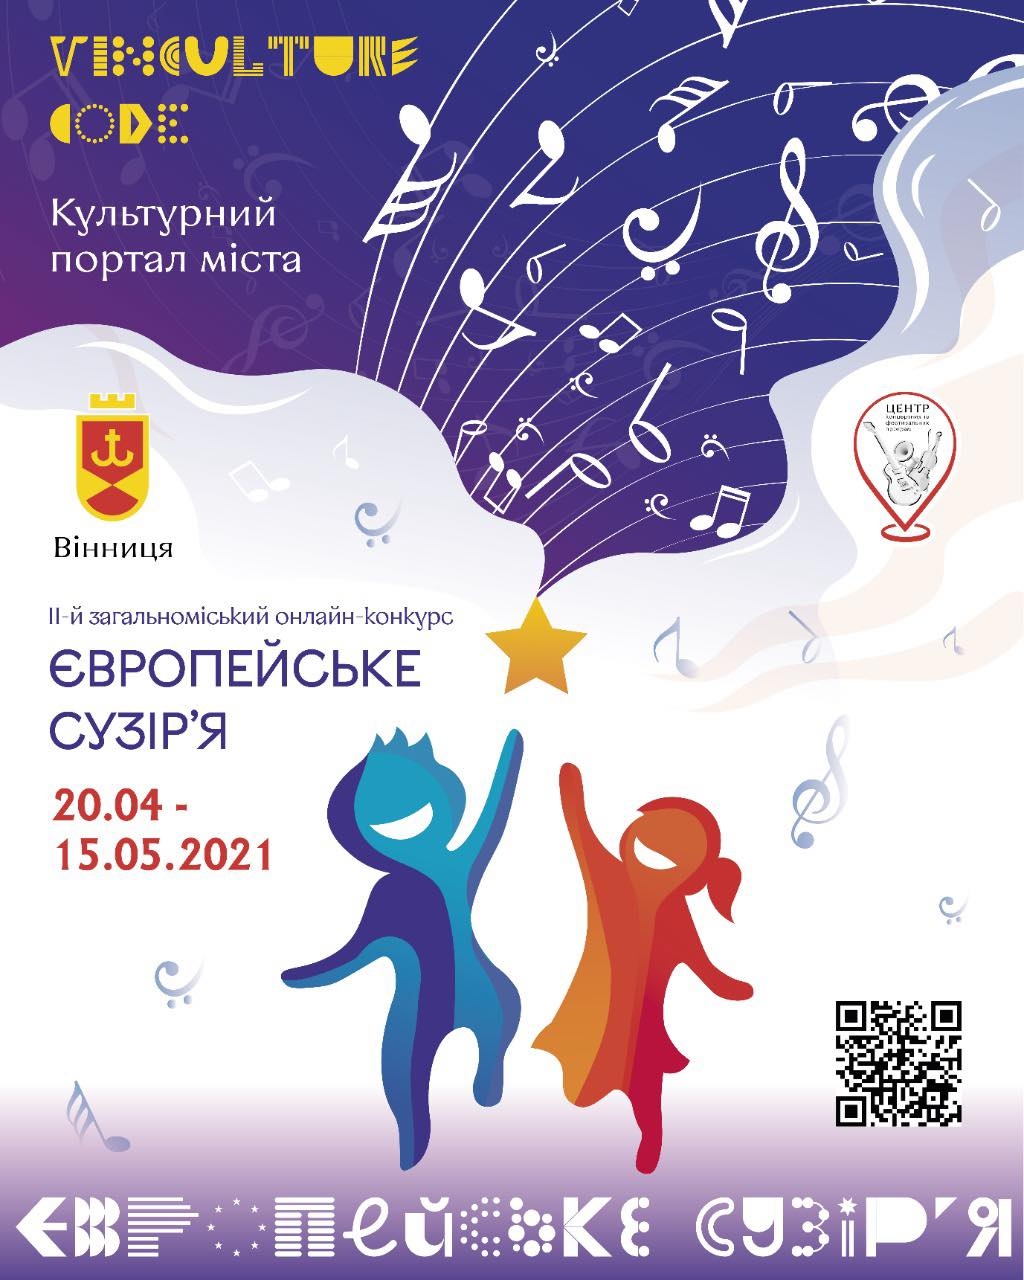 Вінницьких вокалістів та музичні формації запрошують до участі в онлайн-конкурсі "Європейське сузір'я"